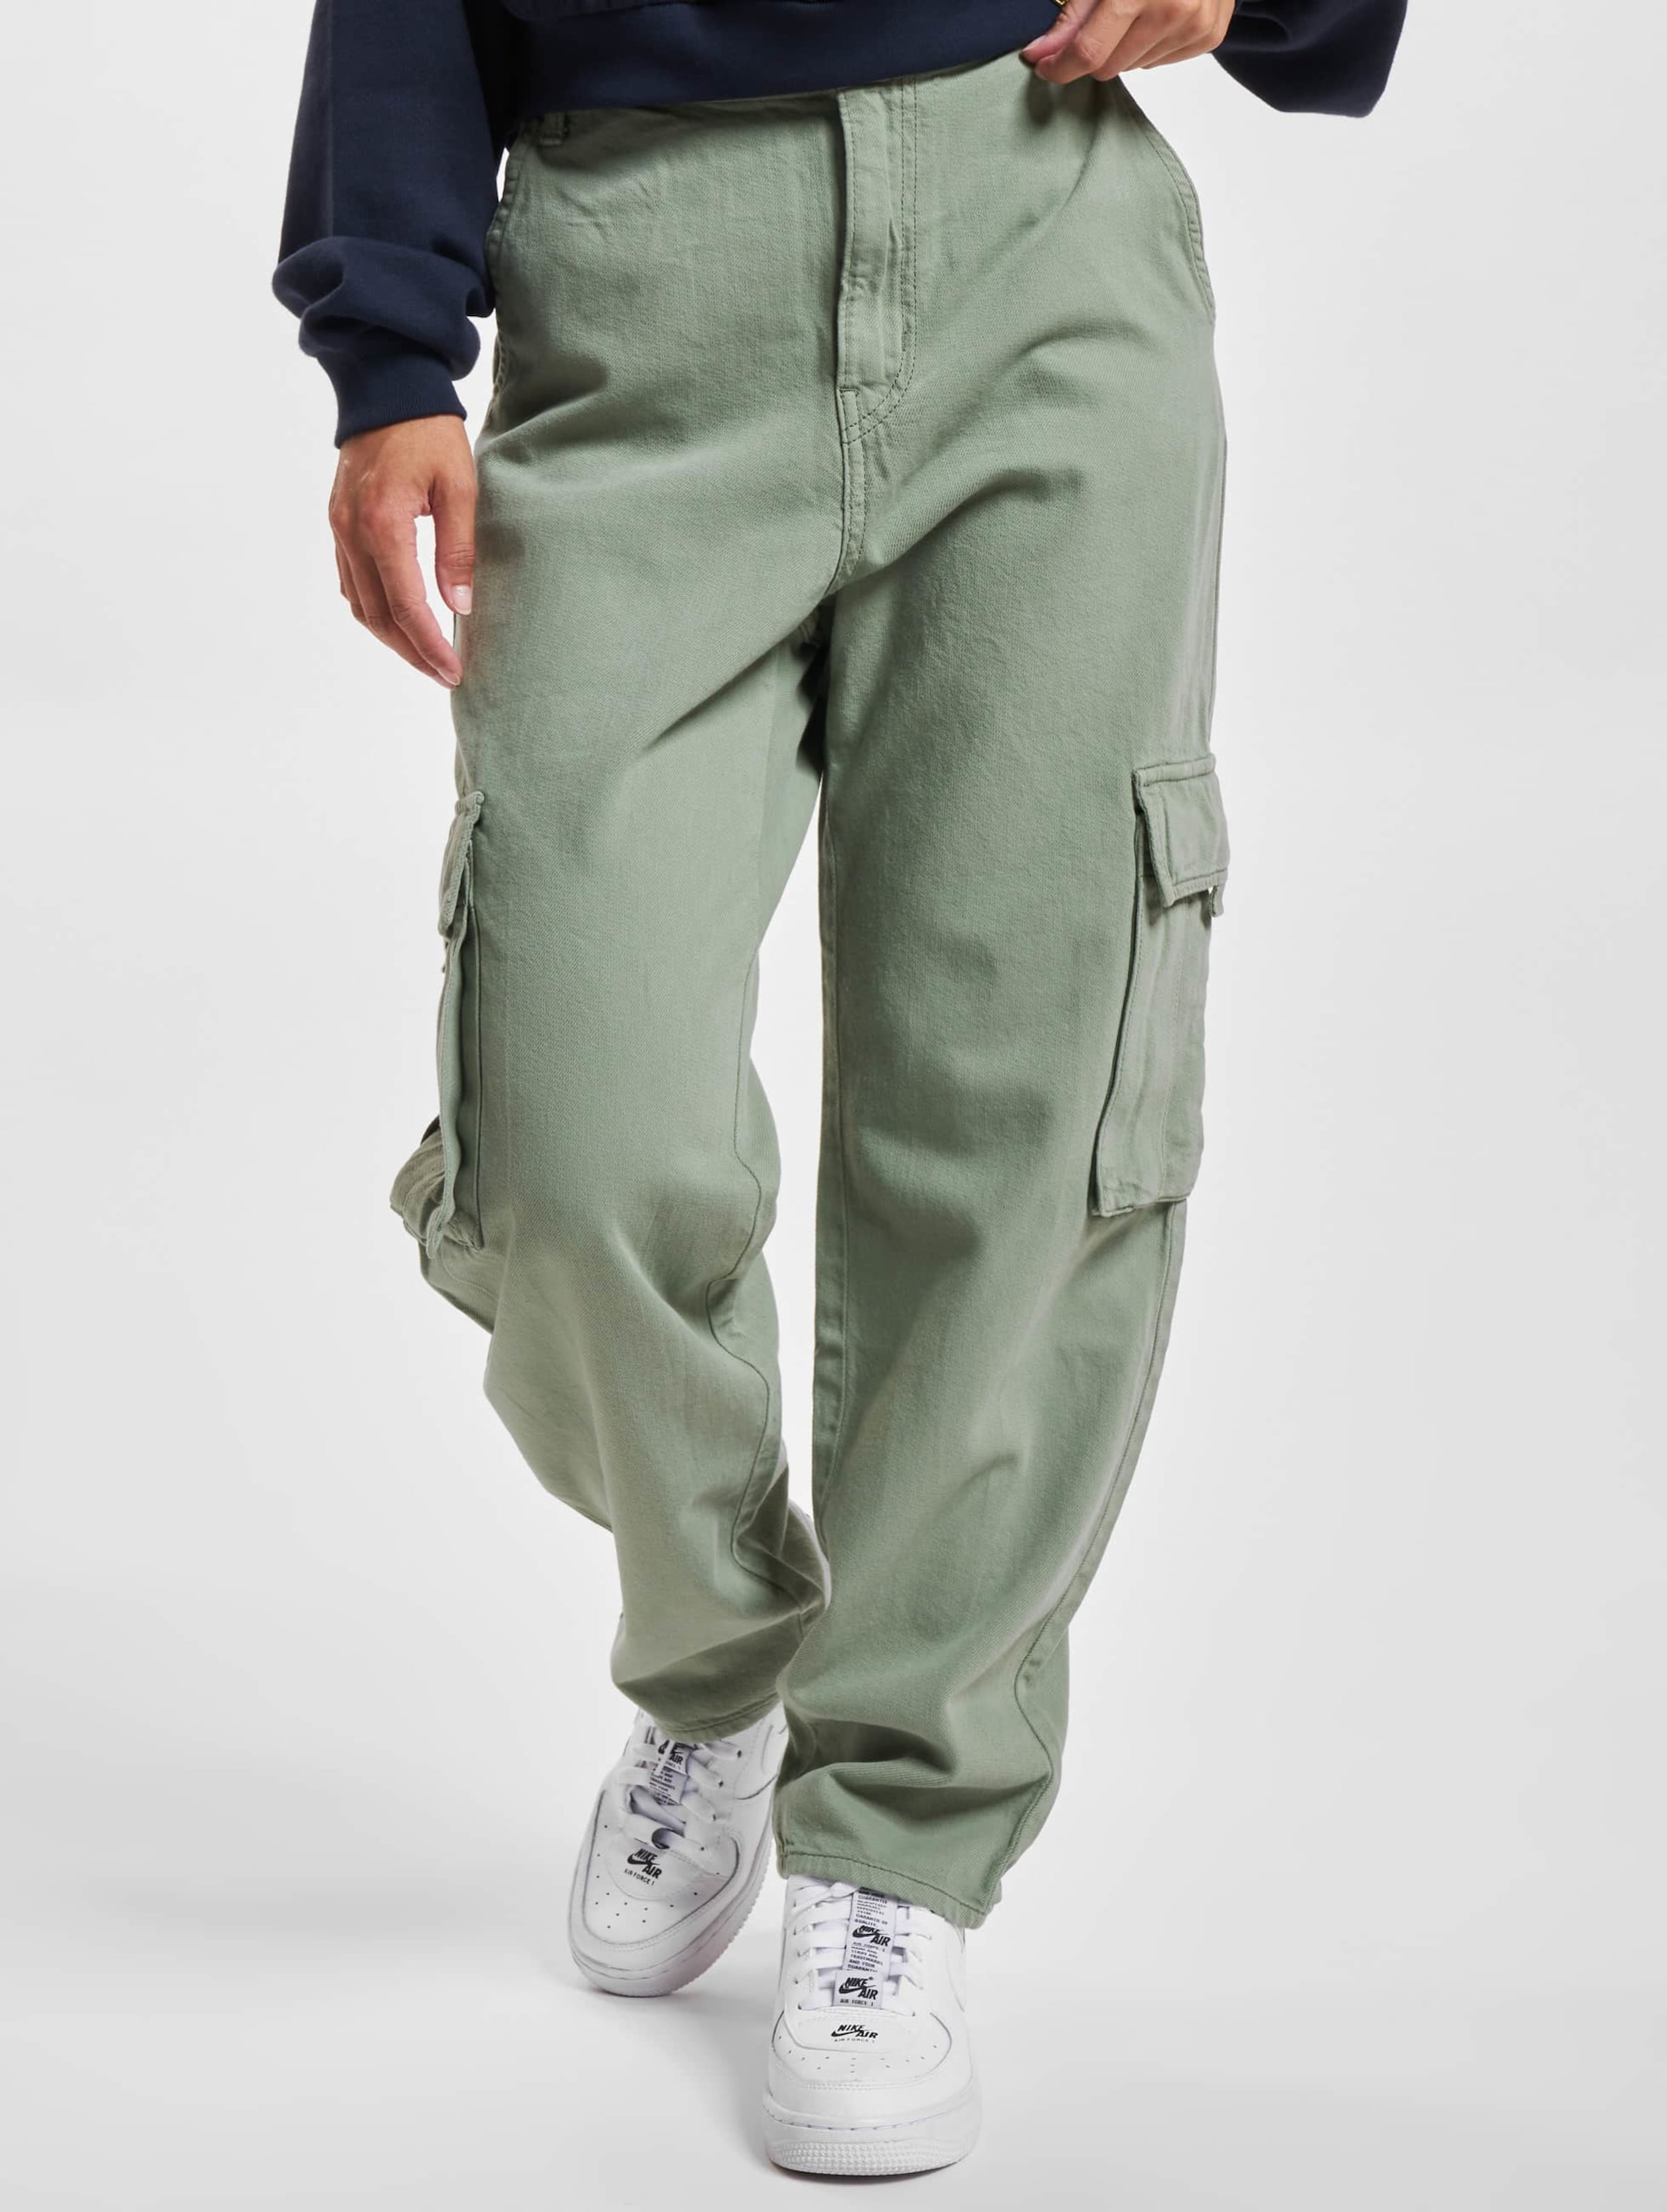 Buy Levi's® Women's Baggy Cargo Pants| Levi's® HK Official Online Shop